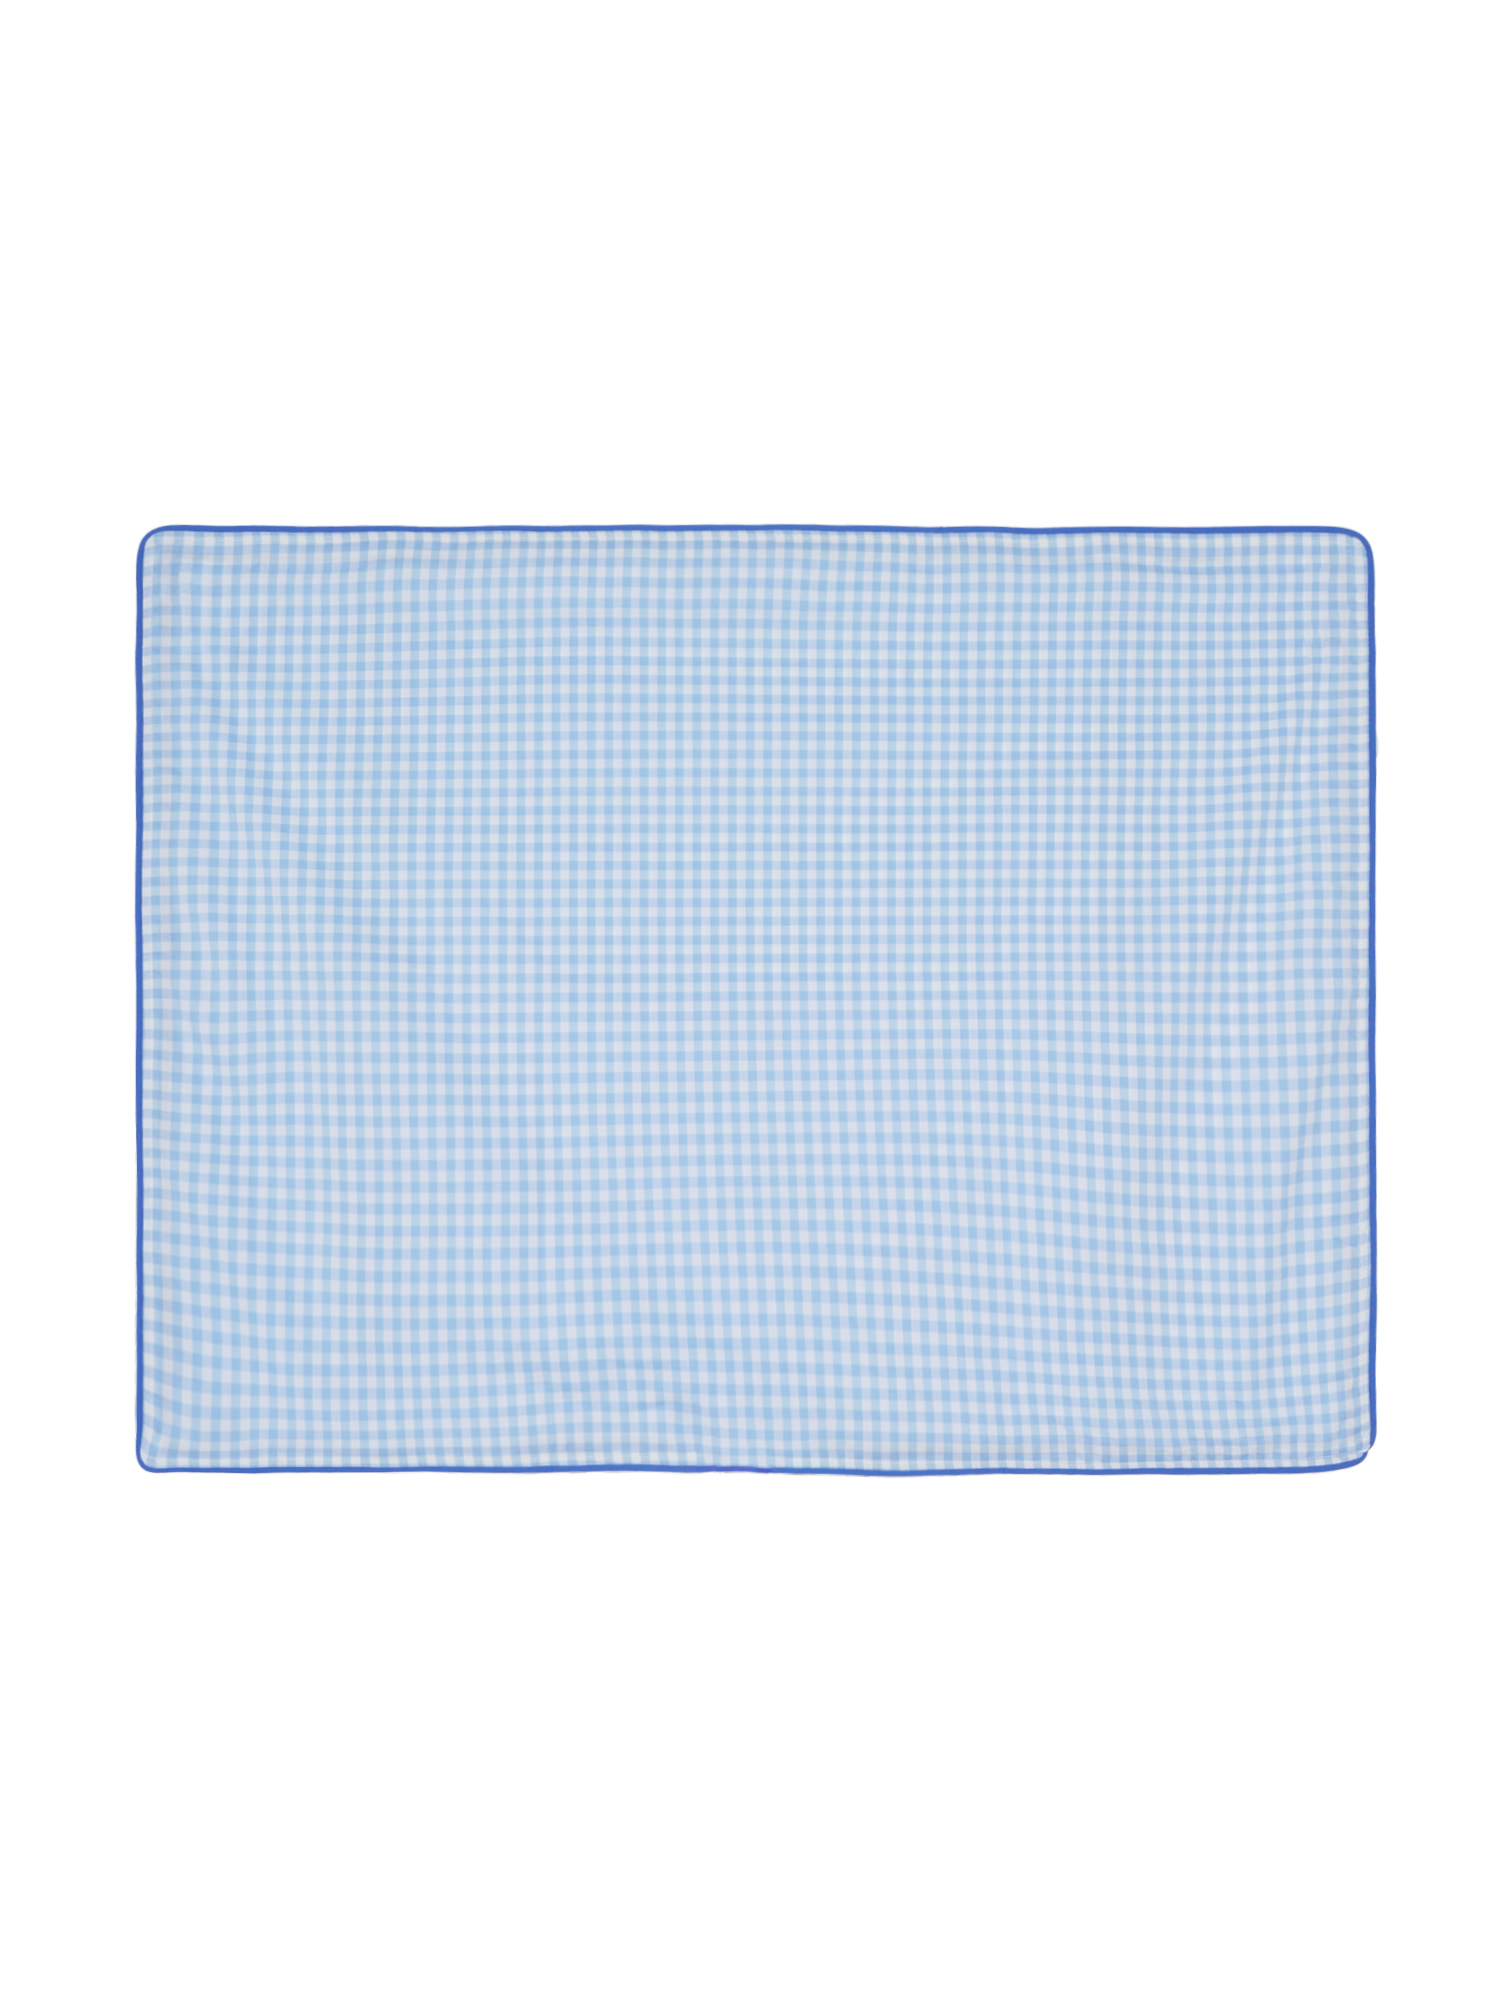 Sleepygom Blue Check Pillow Sheet